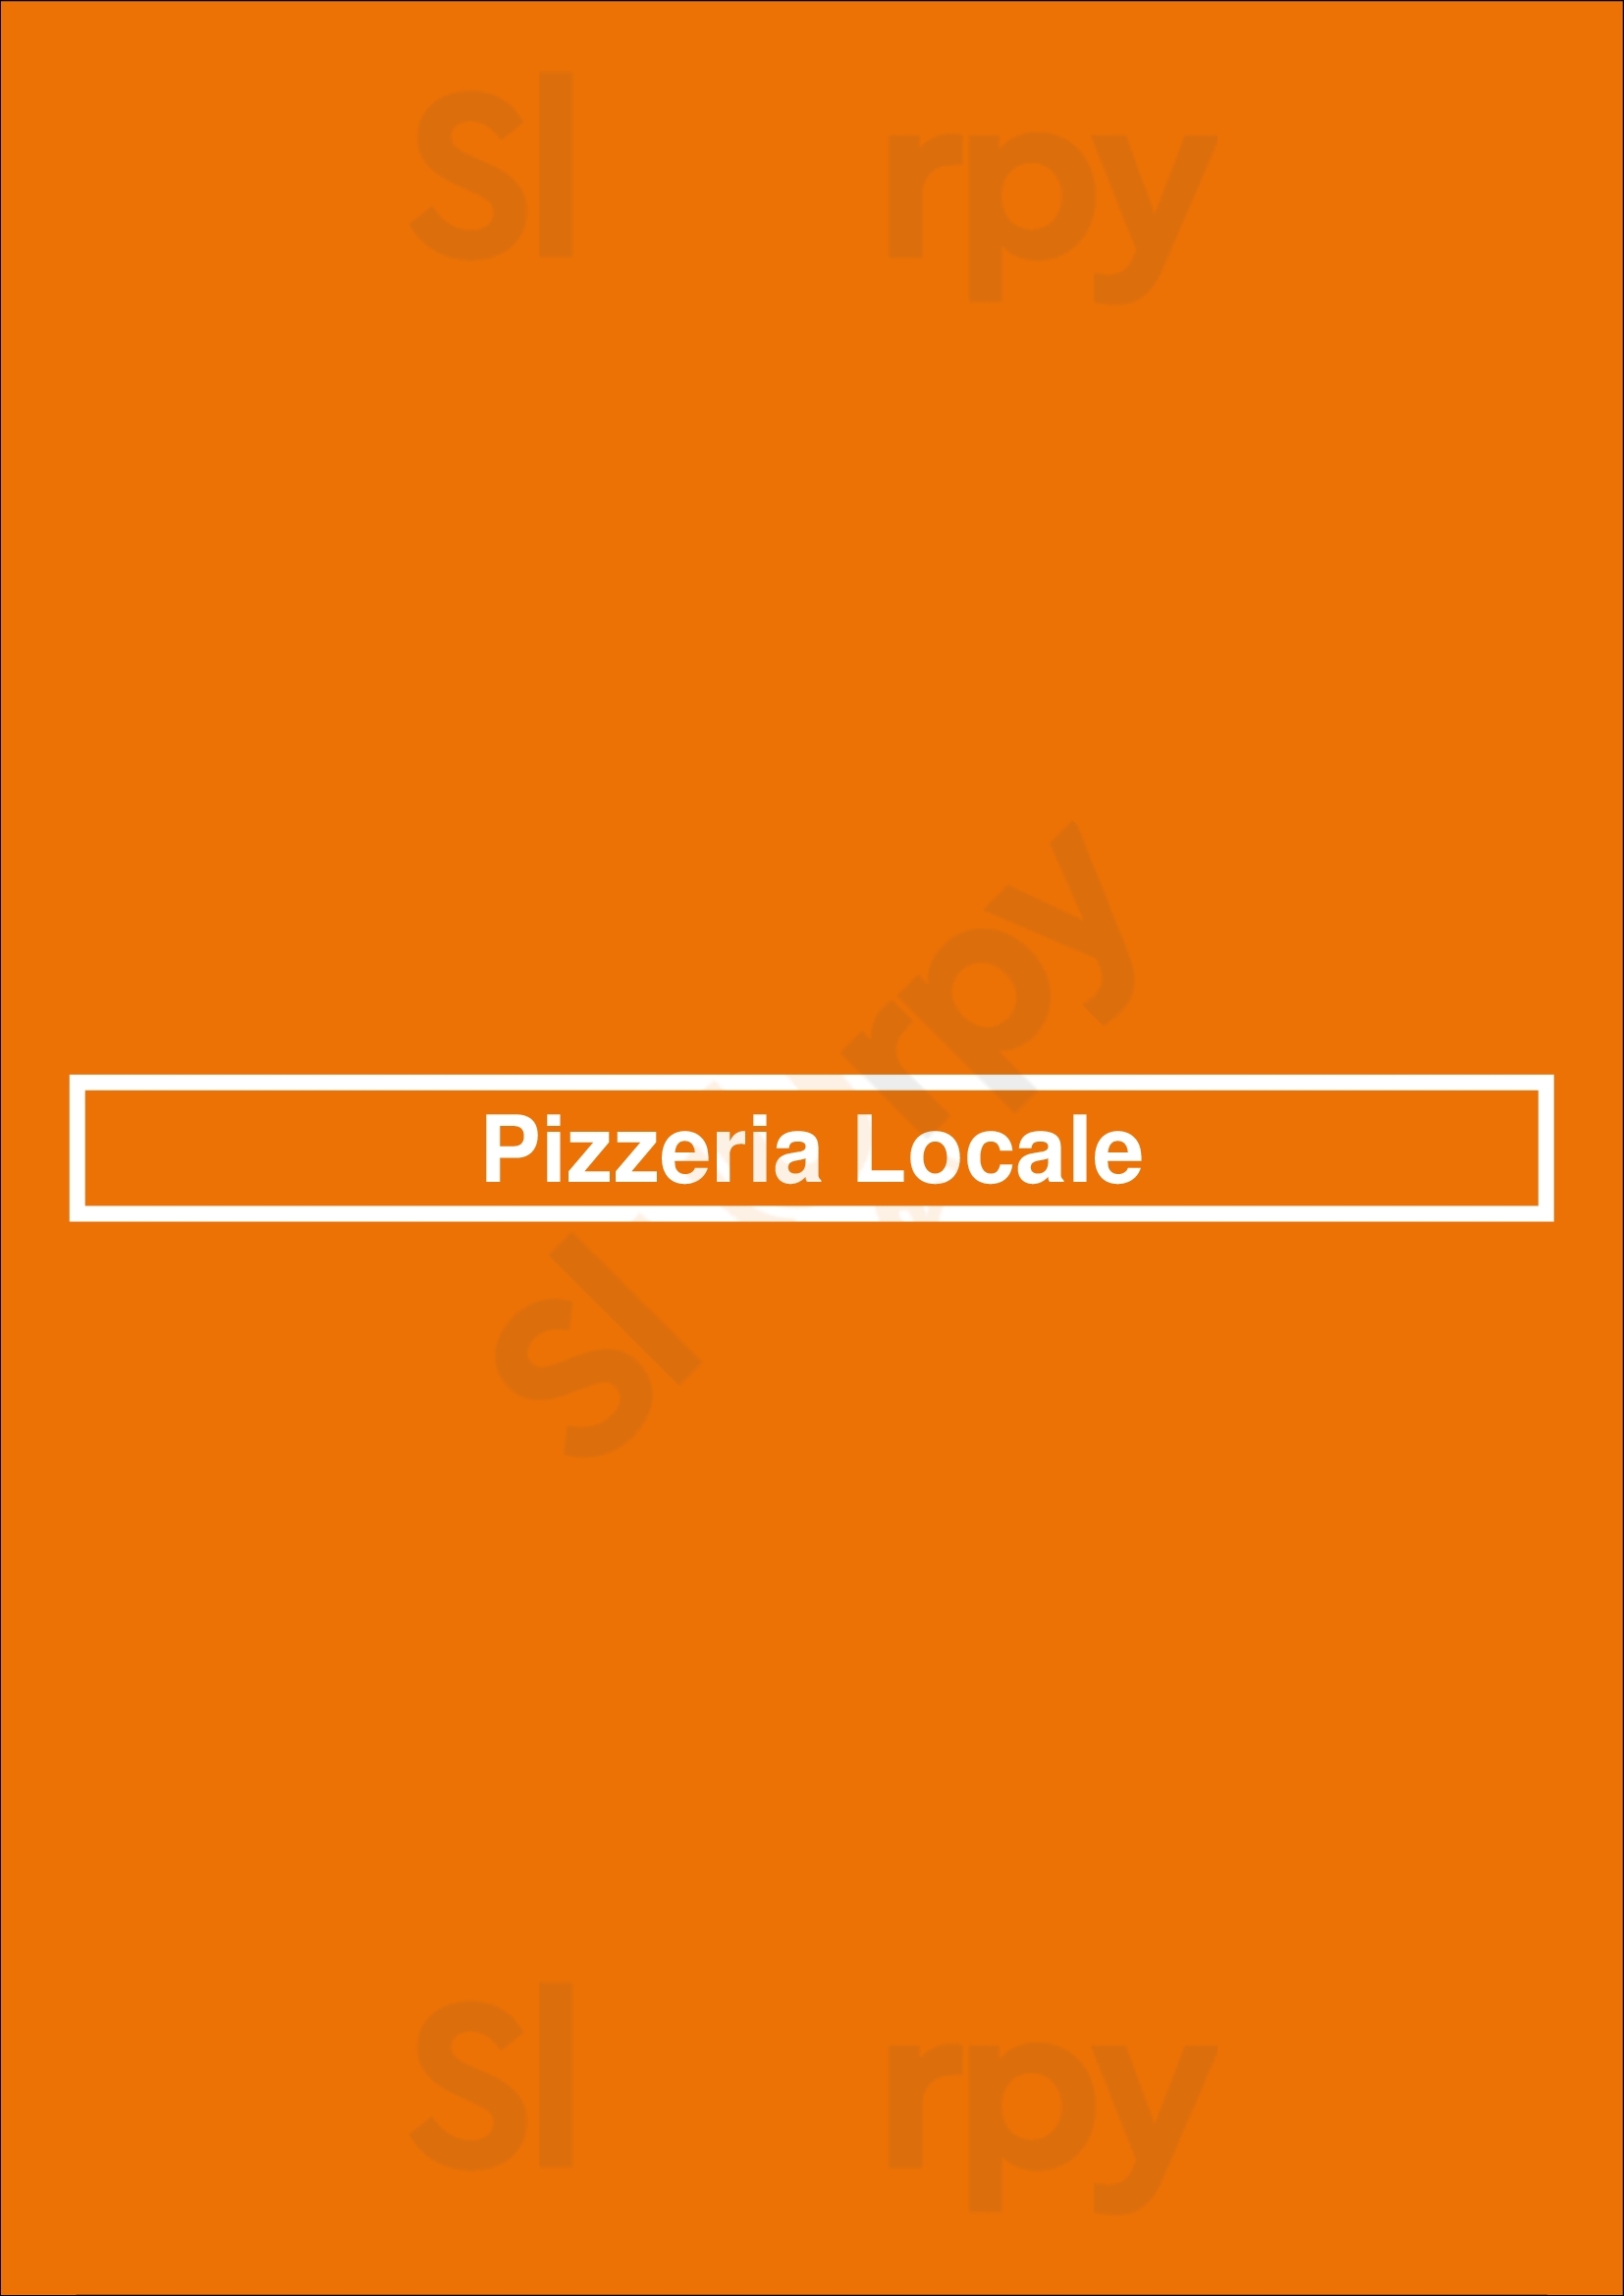 Pizzeria Locale - Broadway Denver Menu - 1